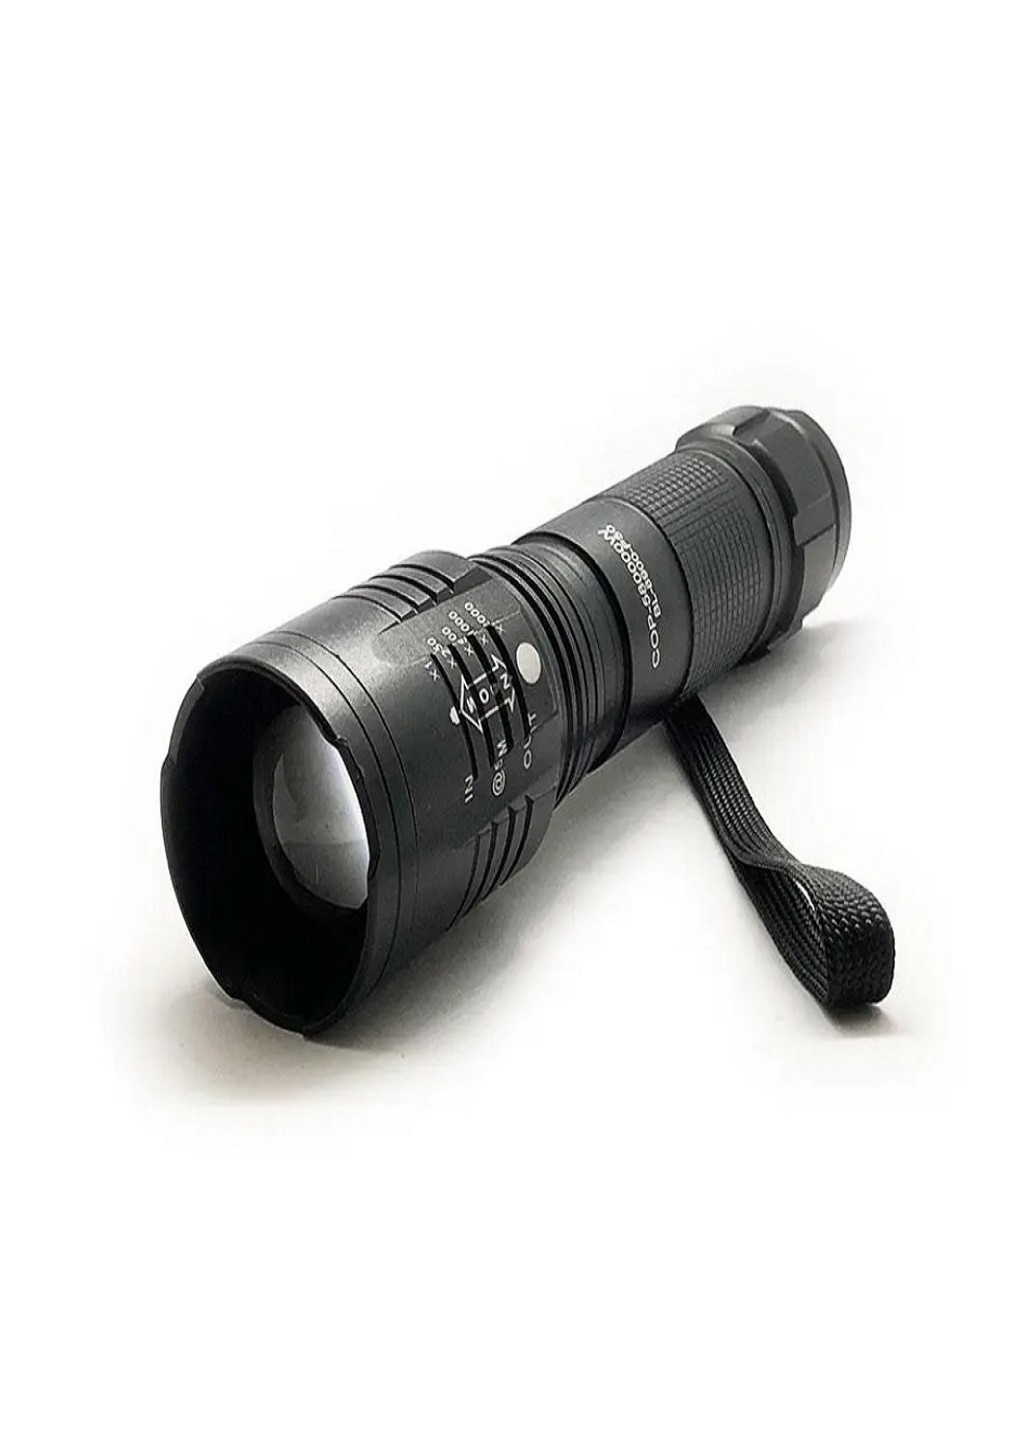 Ручной фонарь аккумуляторный BL 8900 P50 светодиодный VTech (257043046)